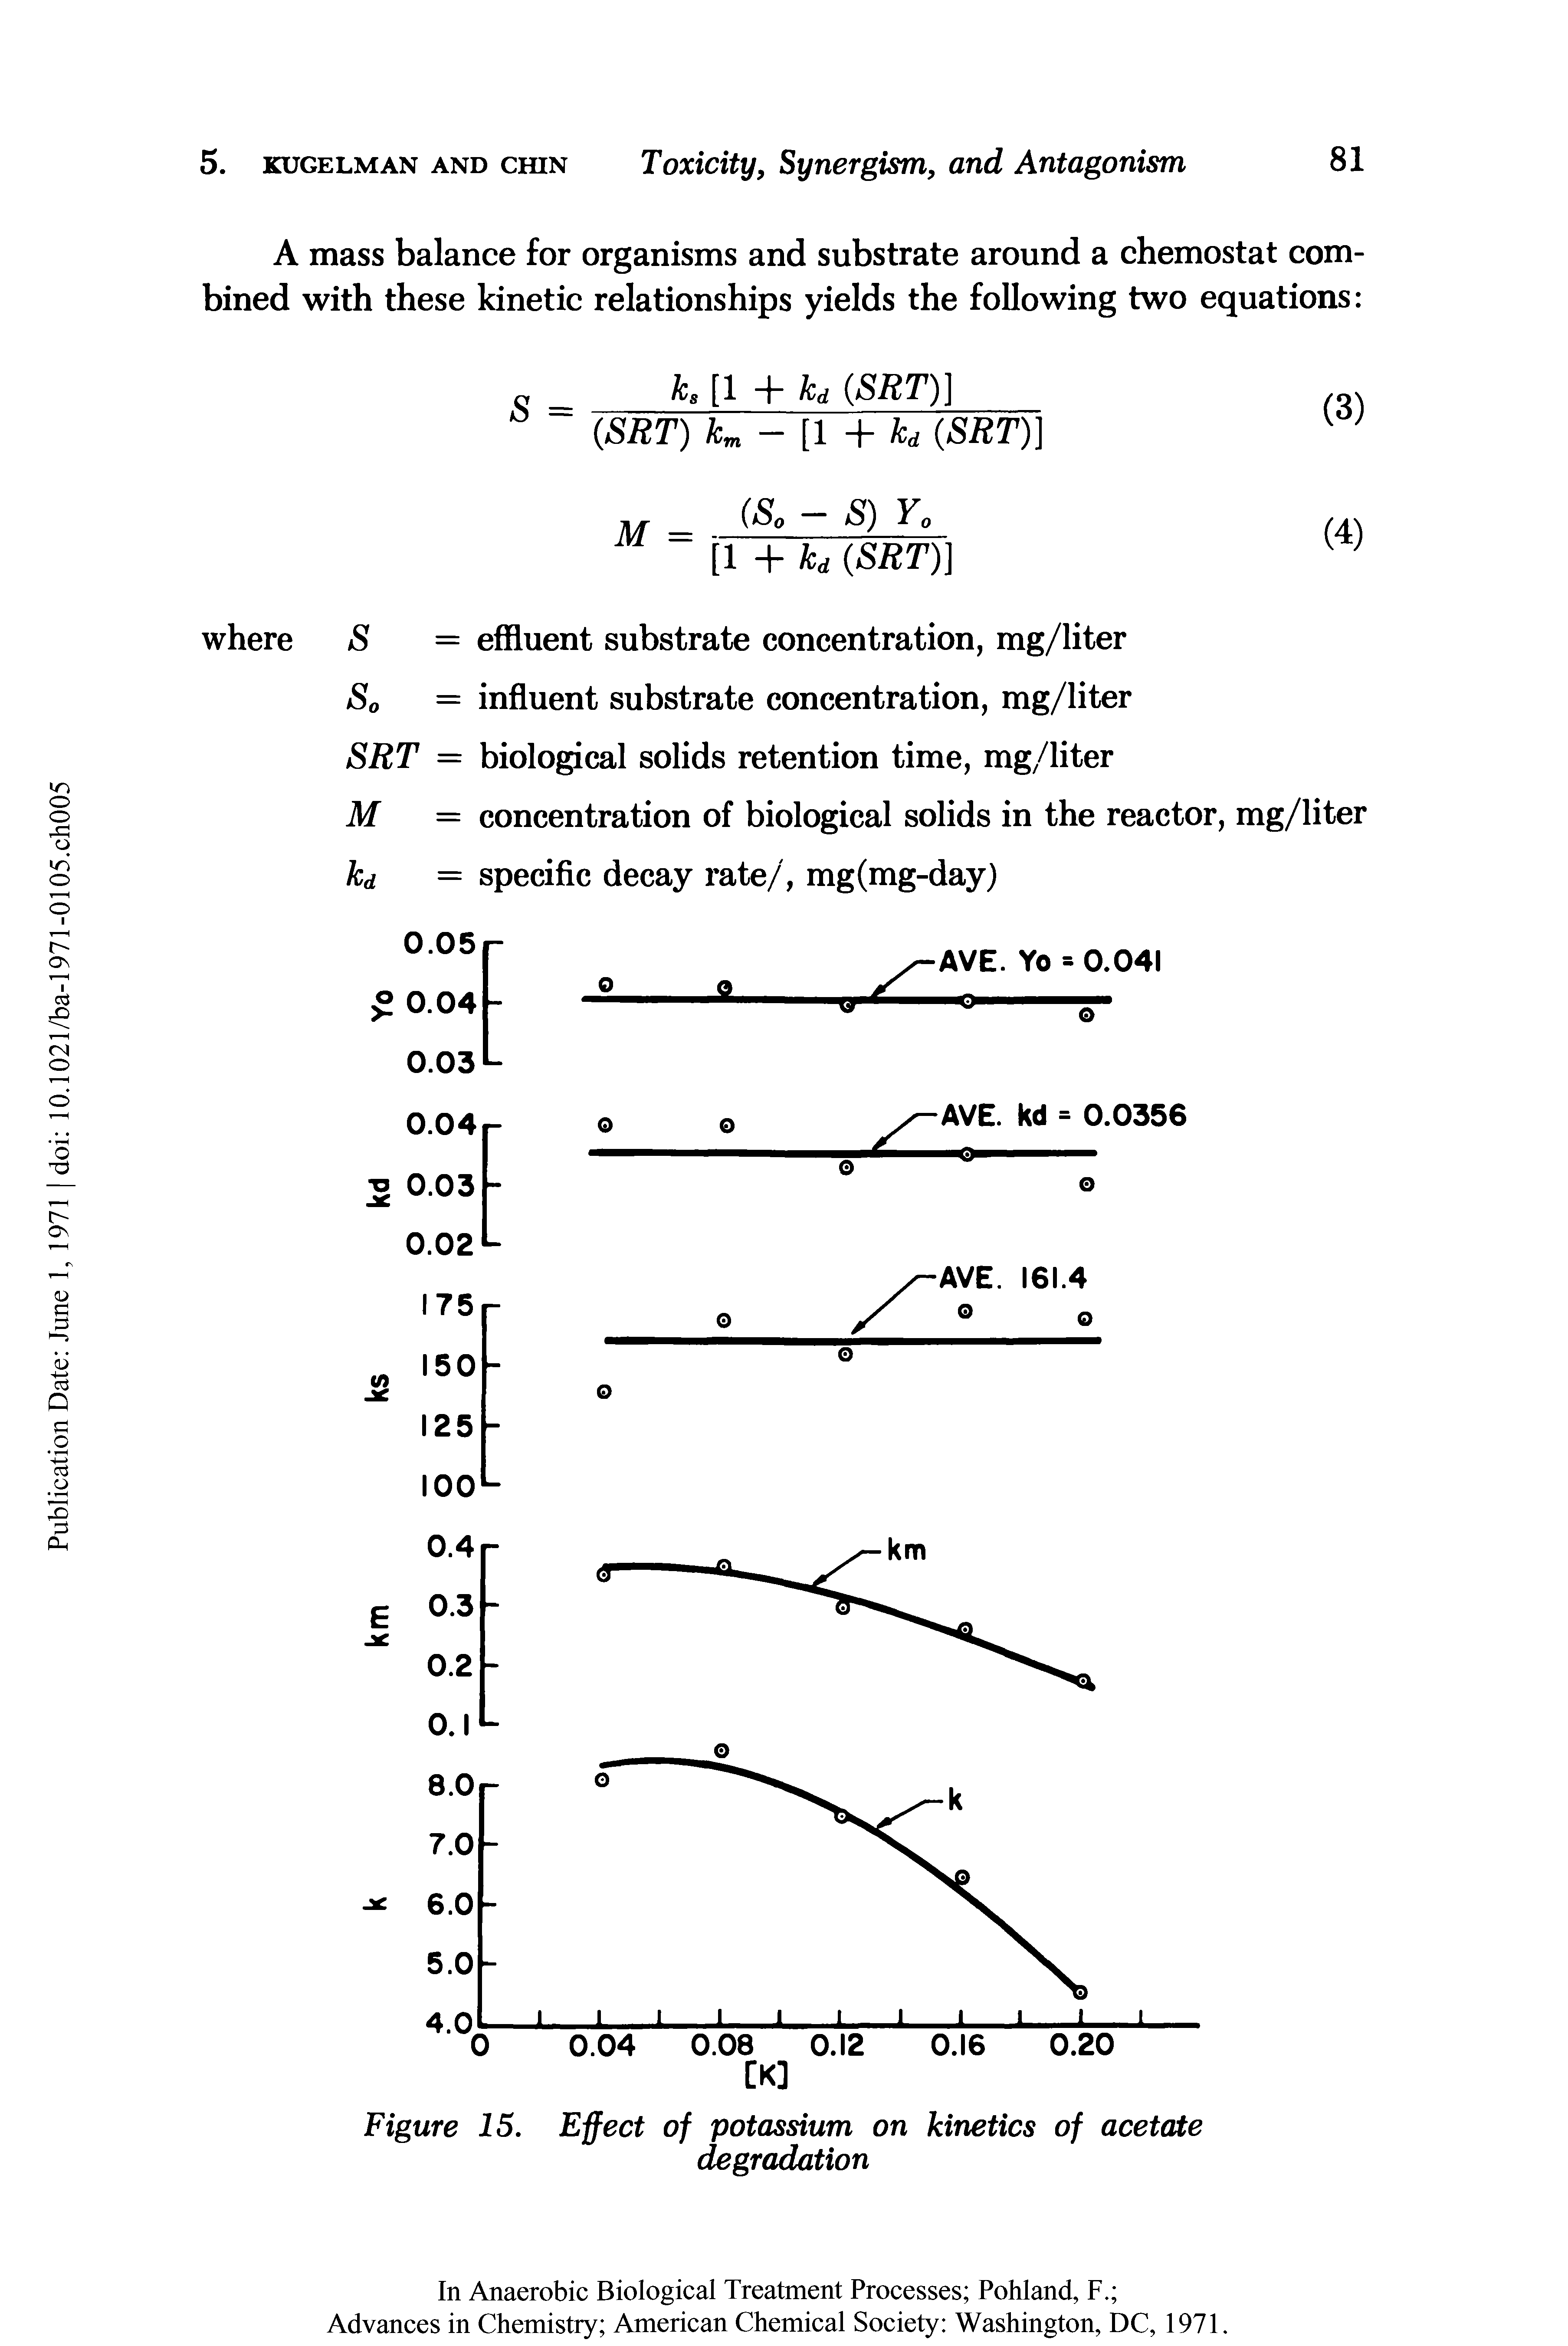 Figure 15. Effect of potassium on kinetics of acetate degradation...